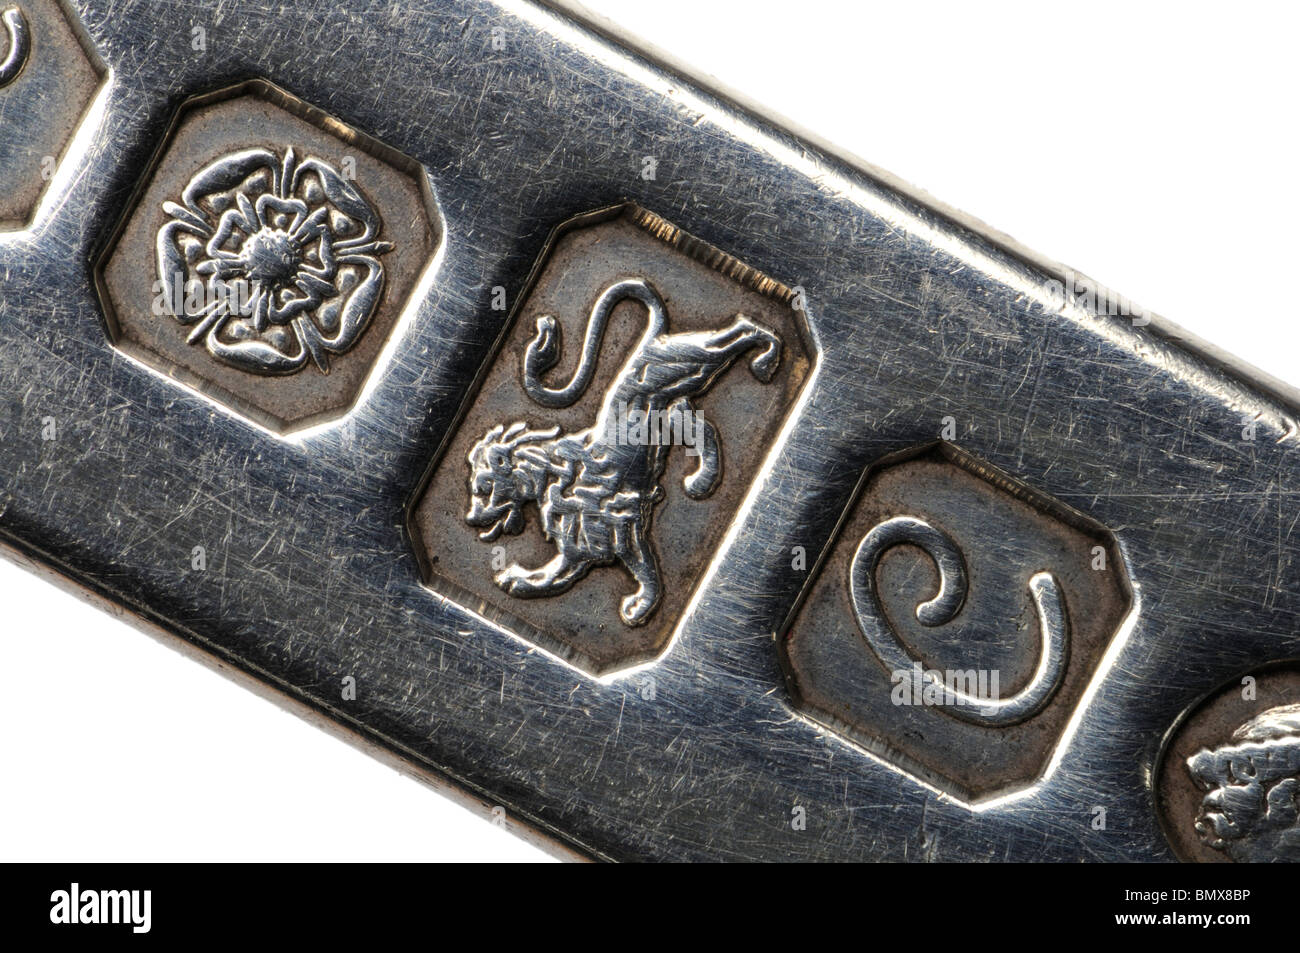 Caracterizándose en lingotes de plata Sterling. Rose (Sheffield); (León de Plata Esterlina = pureza 925/1000); en la fecha la letra 'C' (1977) Foto de stock